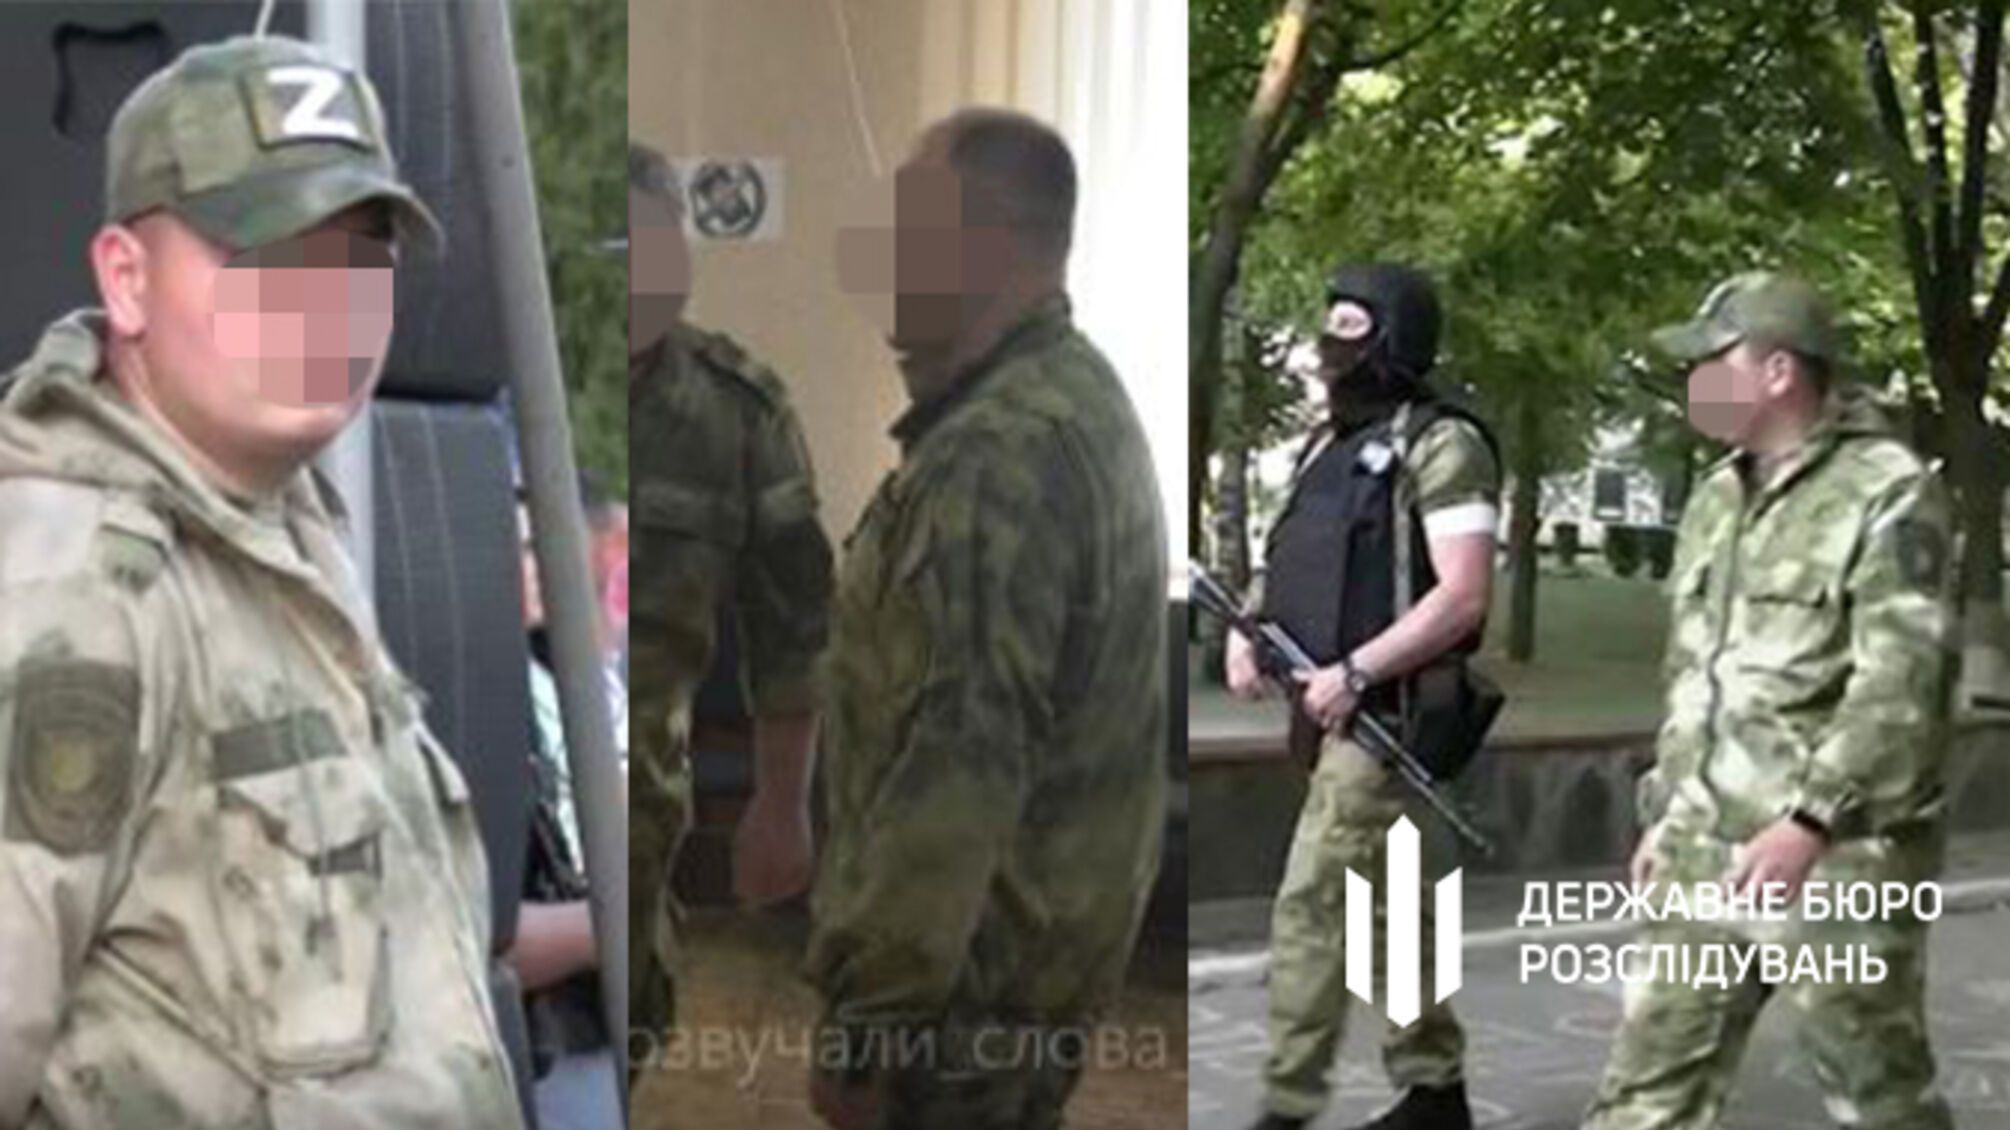 Пошли работать на врага: четверых правоохранителей с Луганщины будут судить за госизмену (фото)